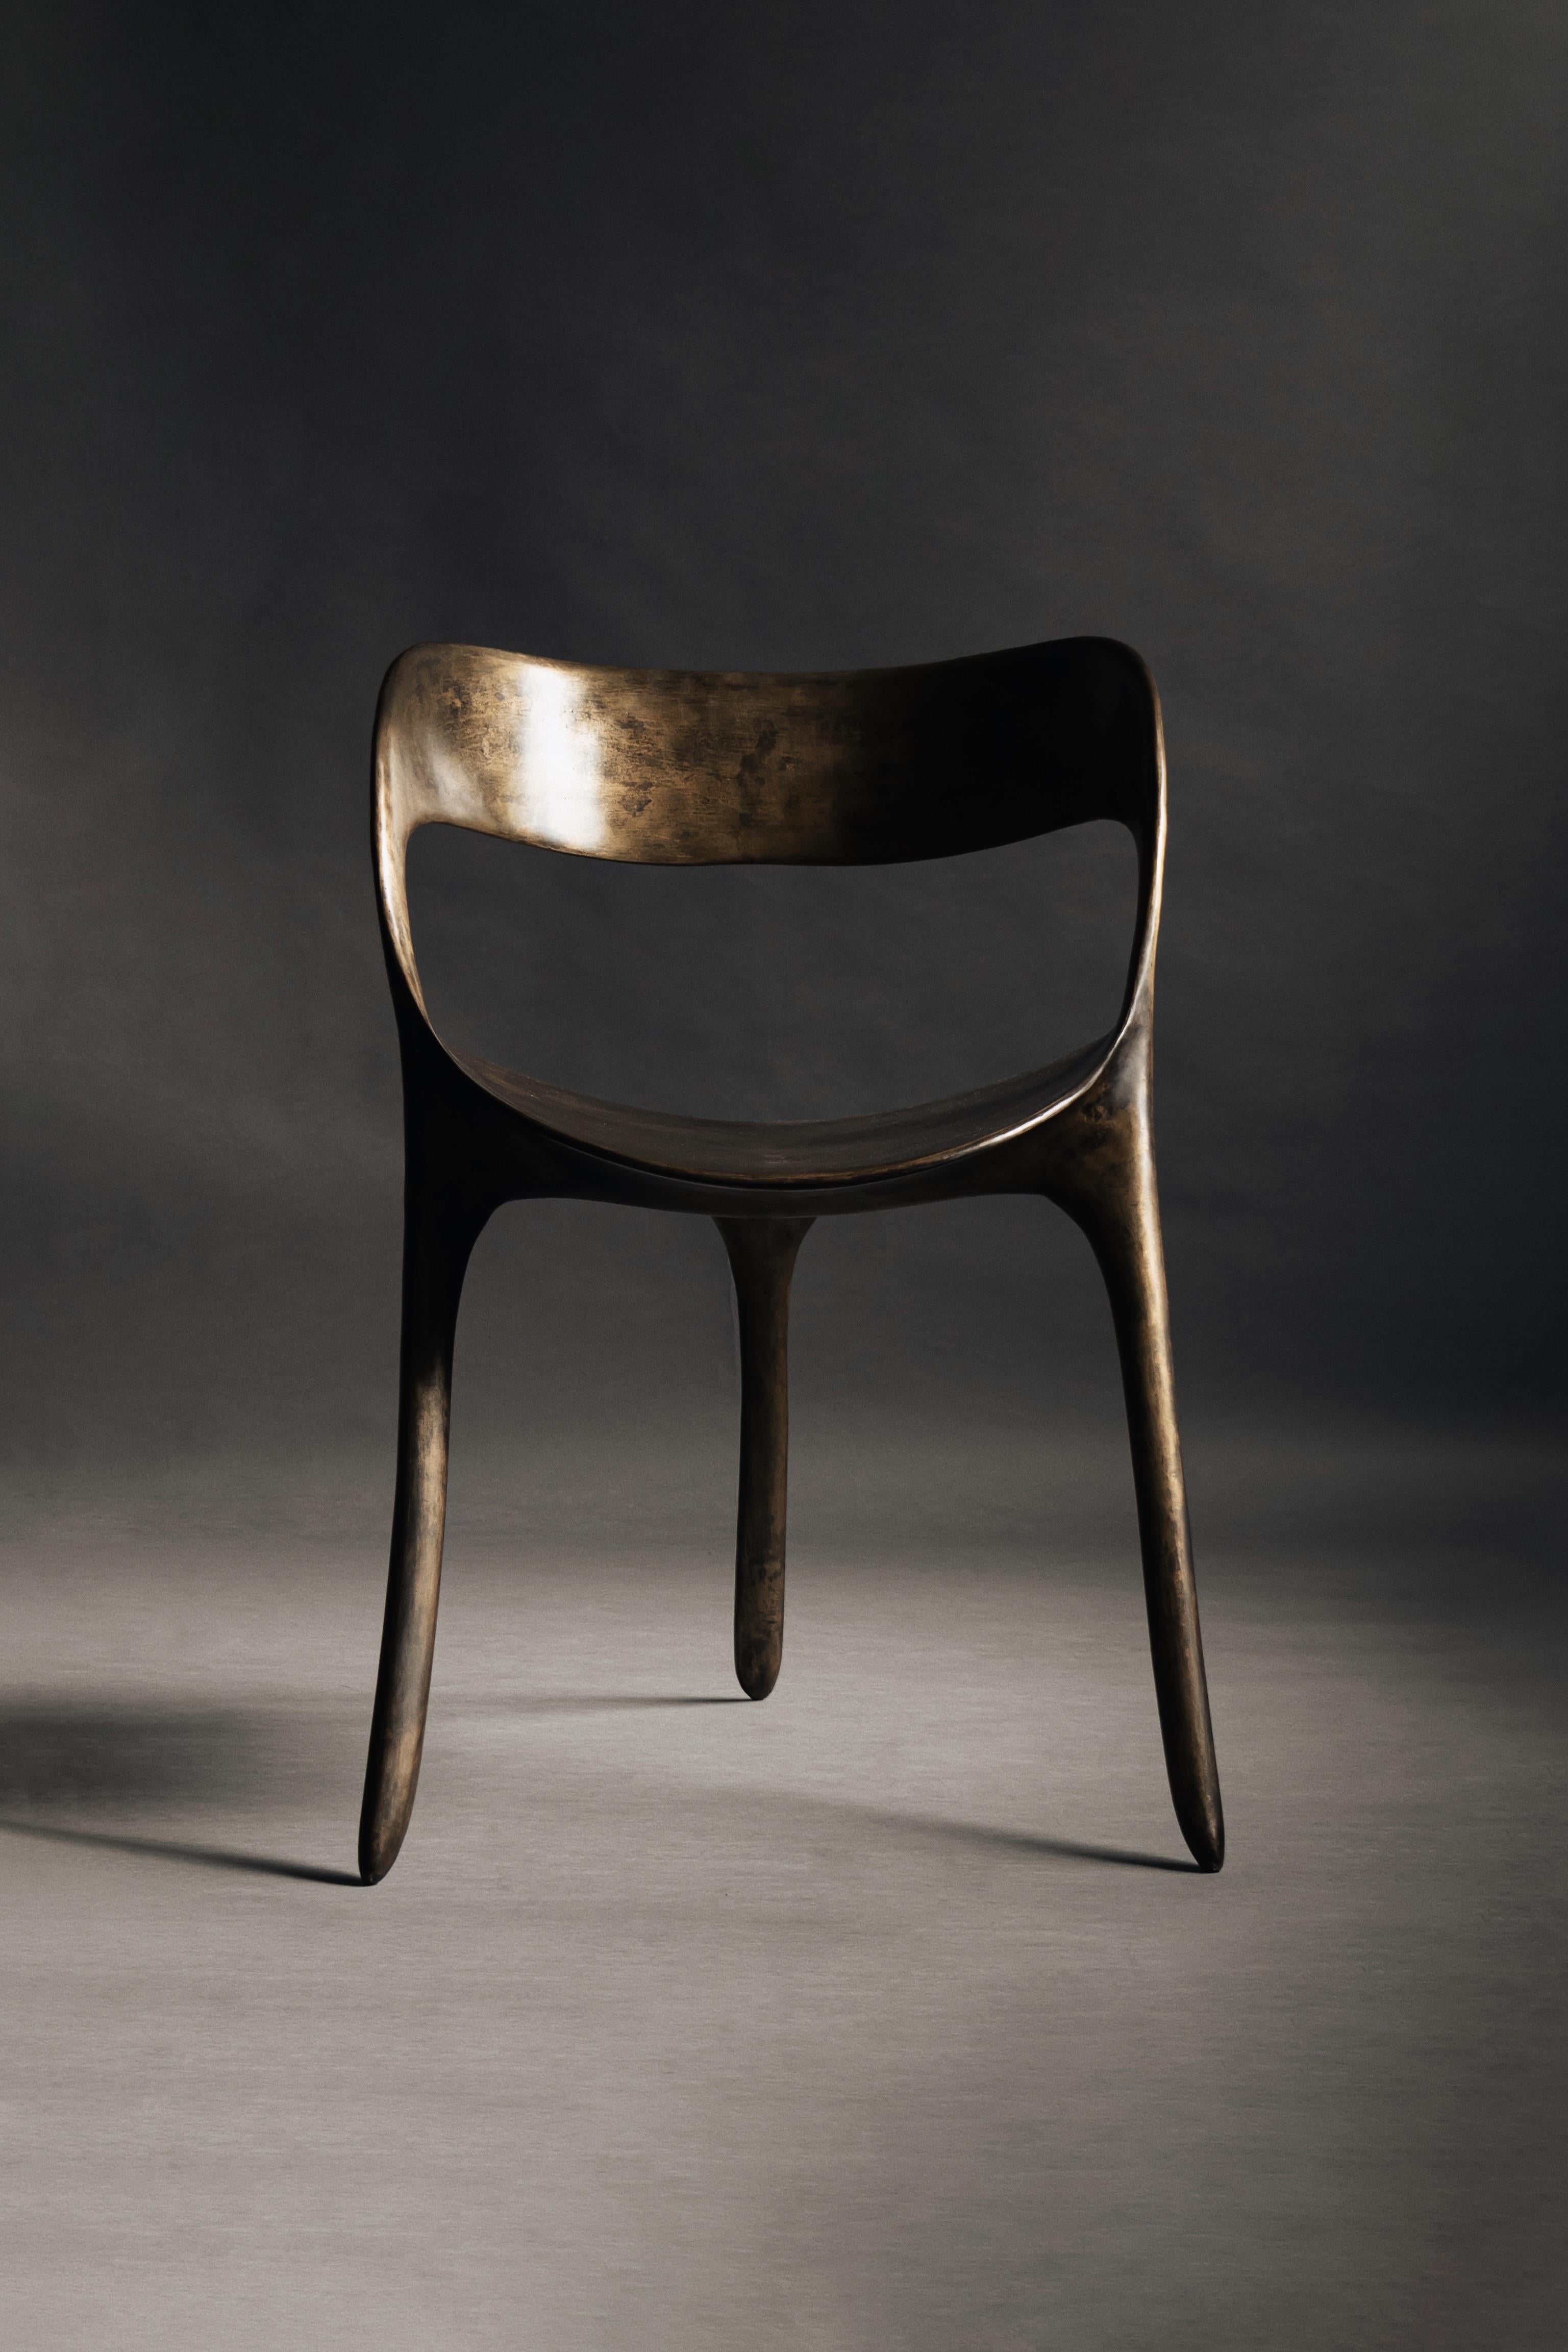 Frequency Stuhl von Sebastián Angeles
MATERIAL: Bronze, Silber Patina
Abmessungen: B55 x T53 x H76 cm
Gewicht: 28 kg
Erhältlich in anderen Ausführungen.

Die Kollektion umfasst Designs, die von Mustern inspiriert sind, die verschiedene